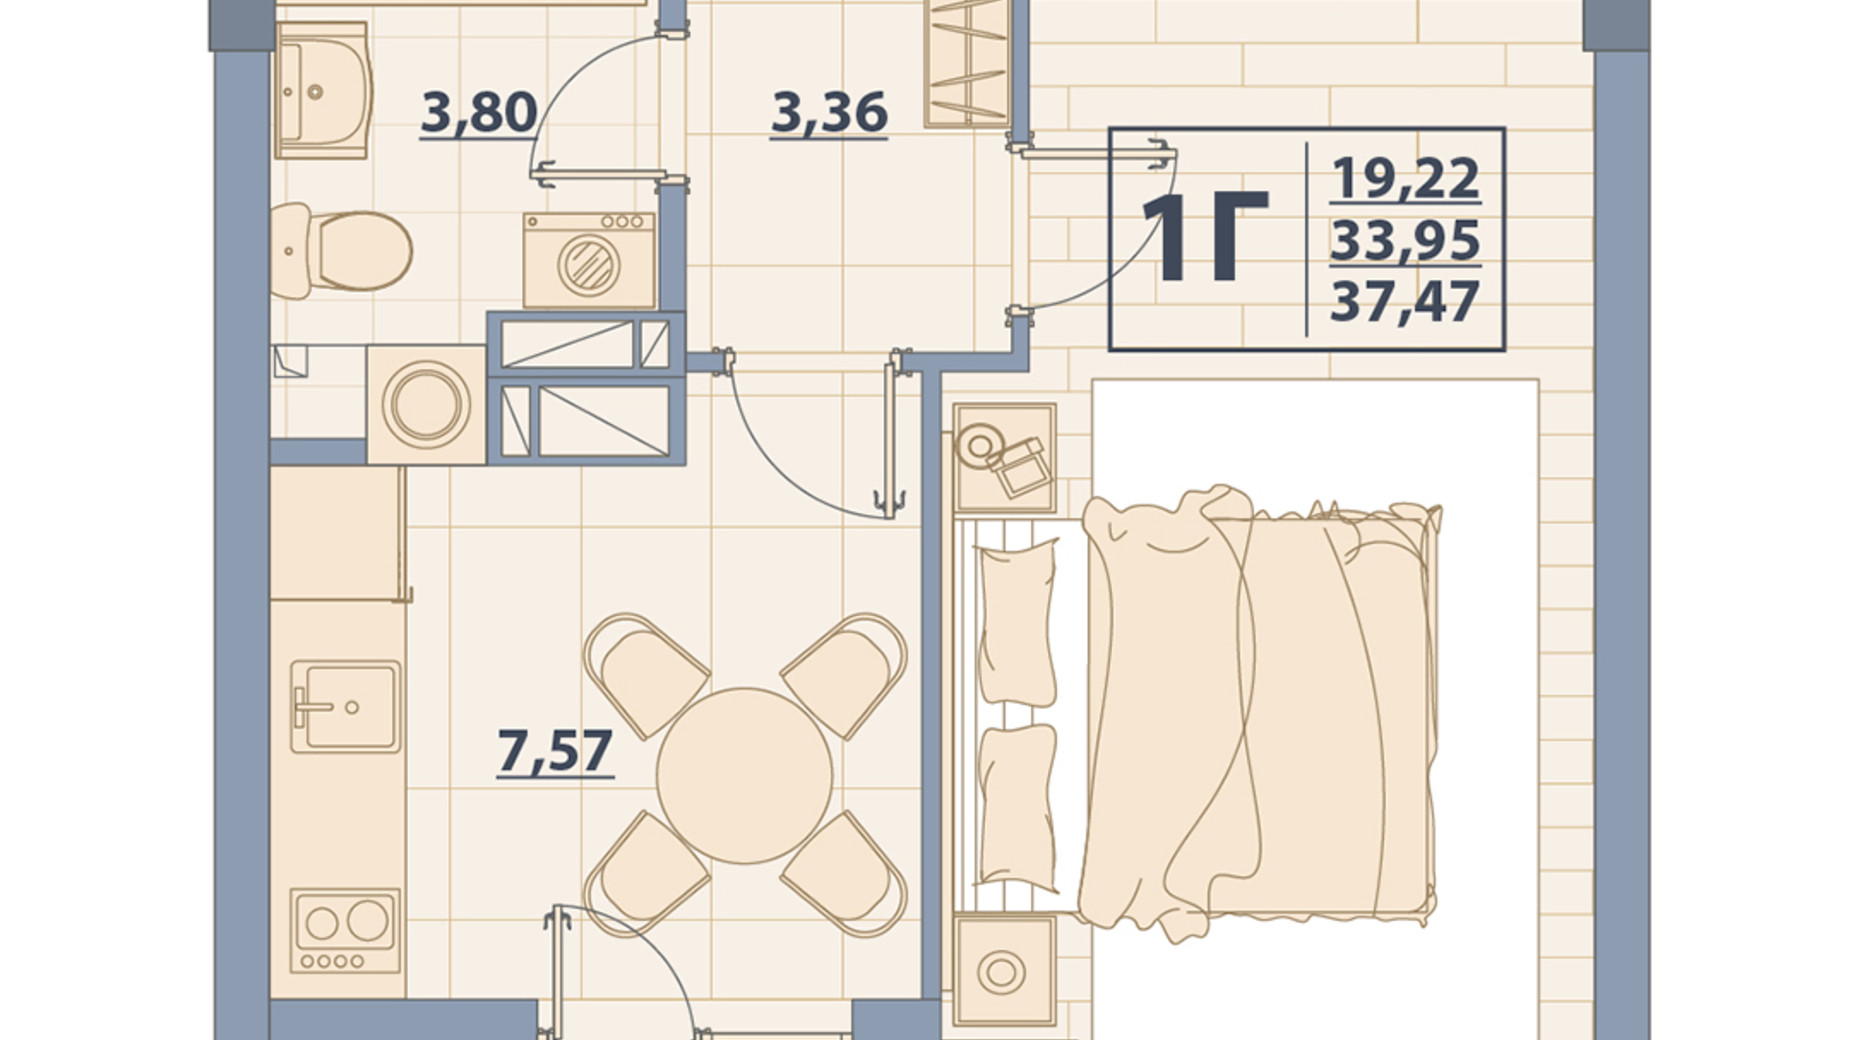 Планування 1-кімнатної квартири в ЖК Centr City 37.47 м², фото 579640